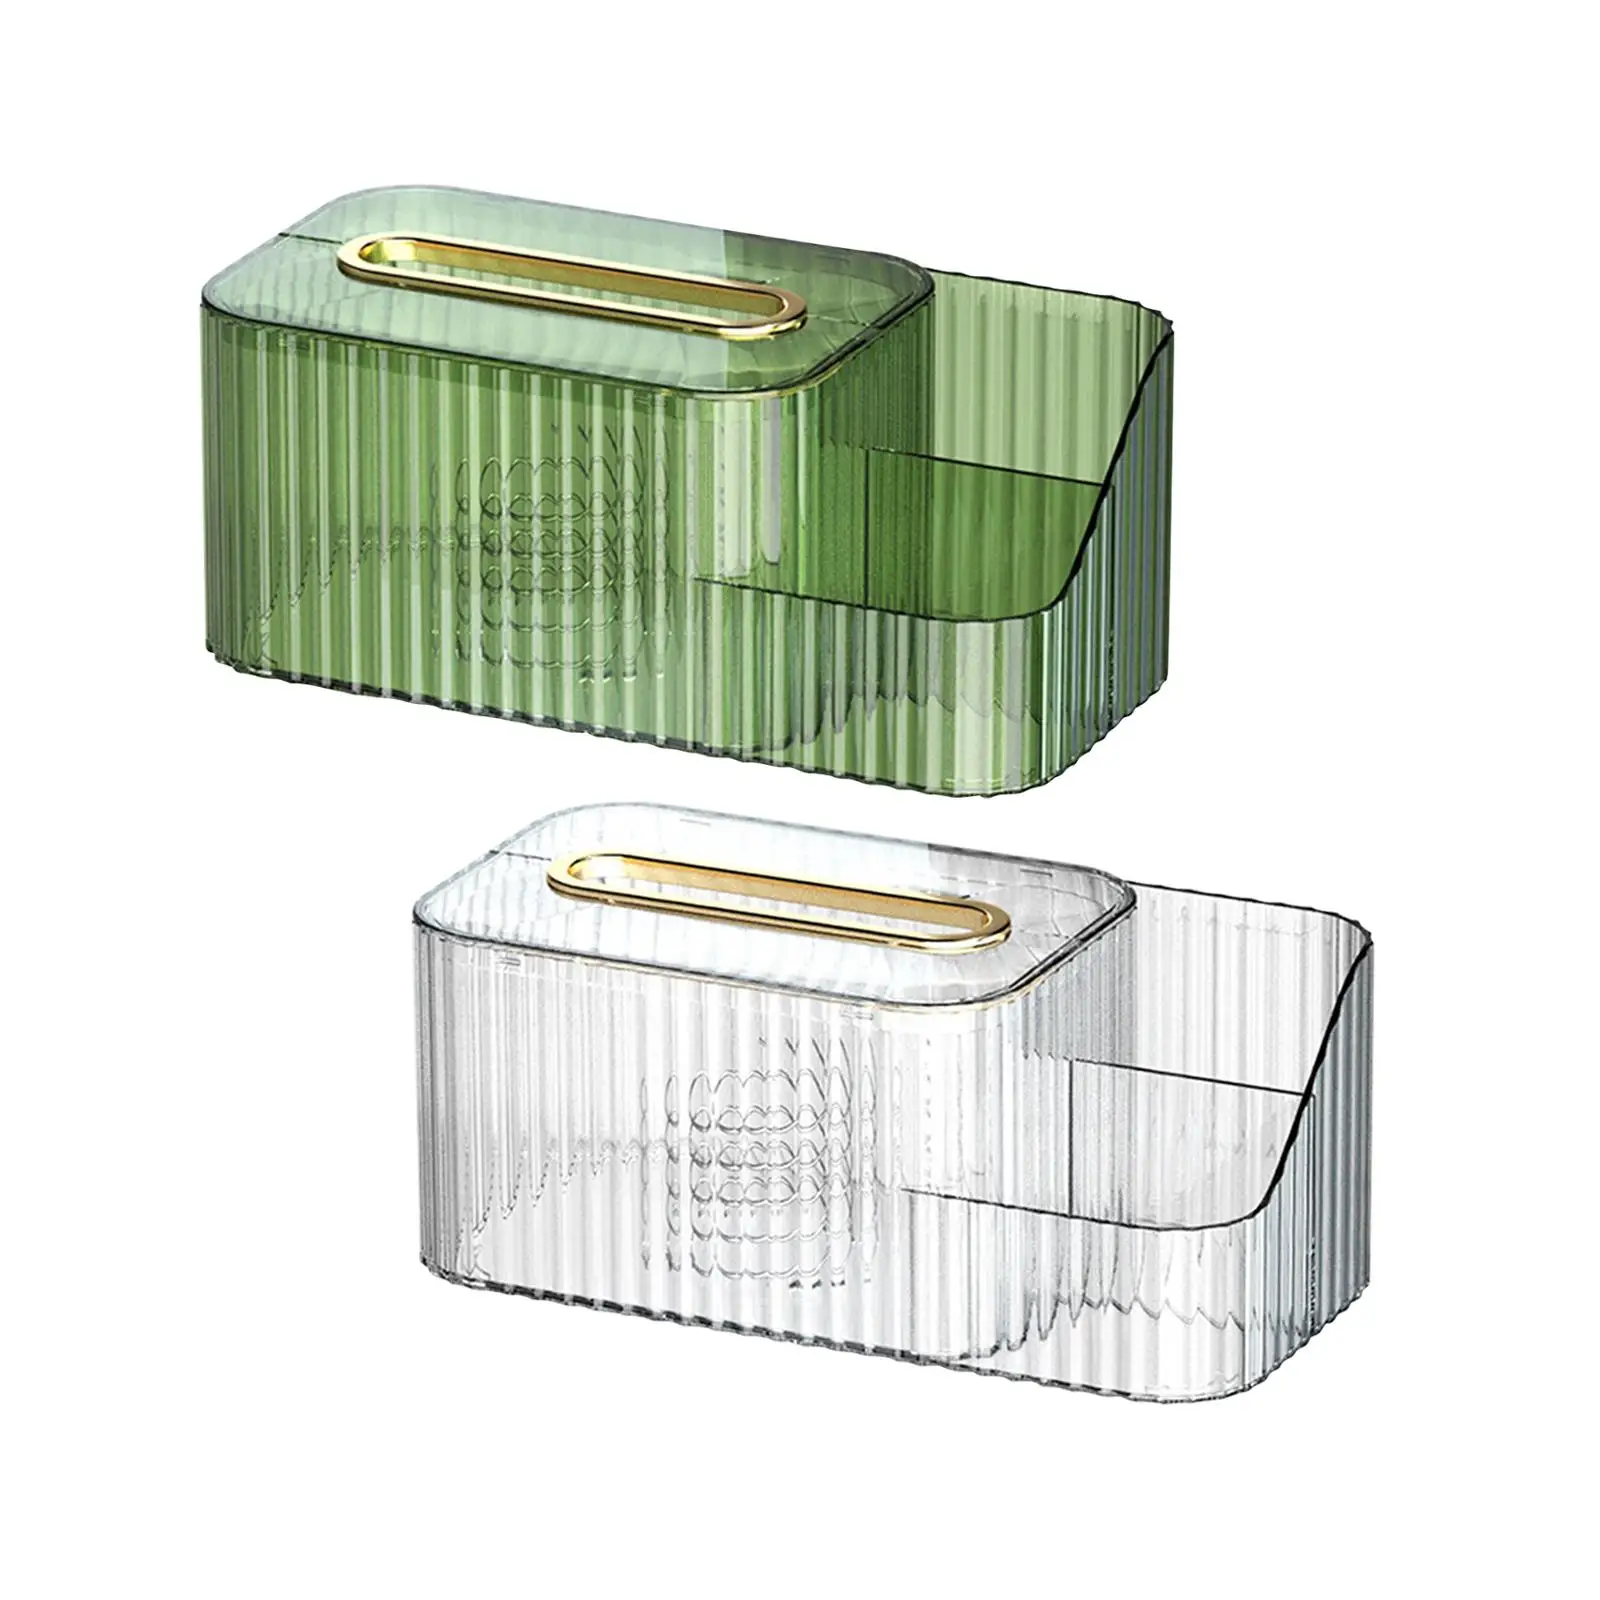 Transparent Tissue Box Holder with Vanity Organizer Tissue Storage Box for Restaurant Night Stand Desktop Office